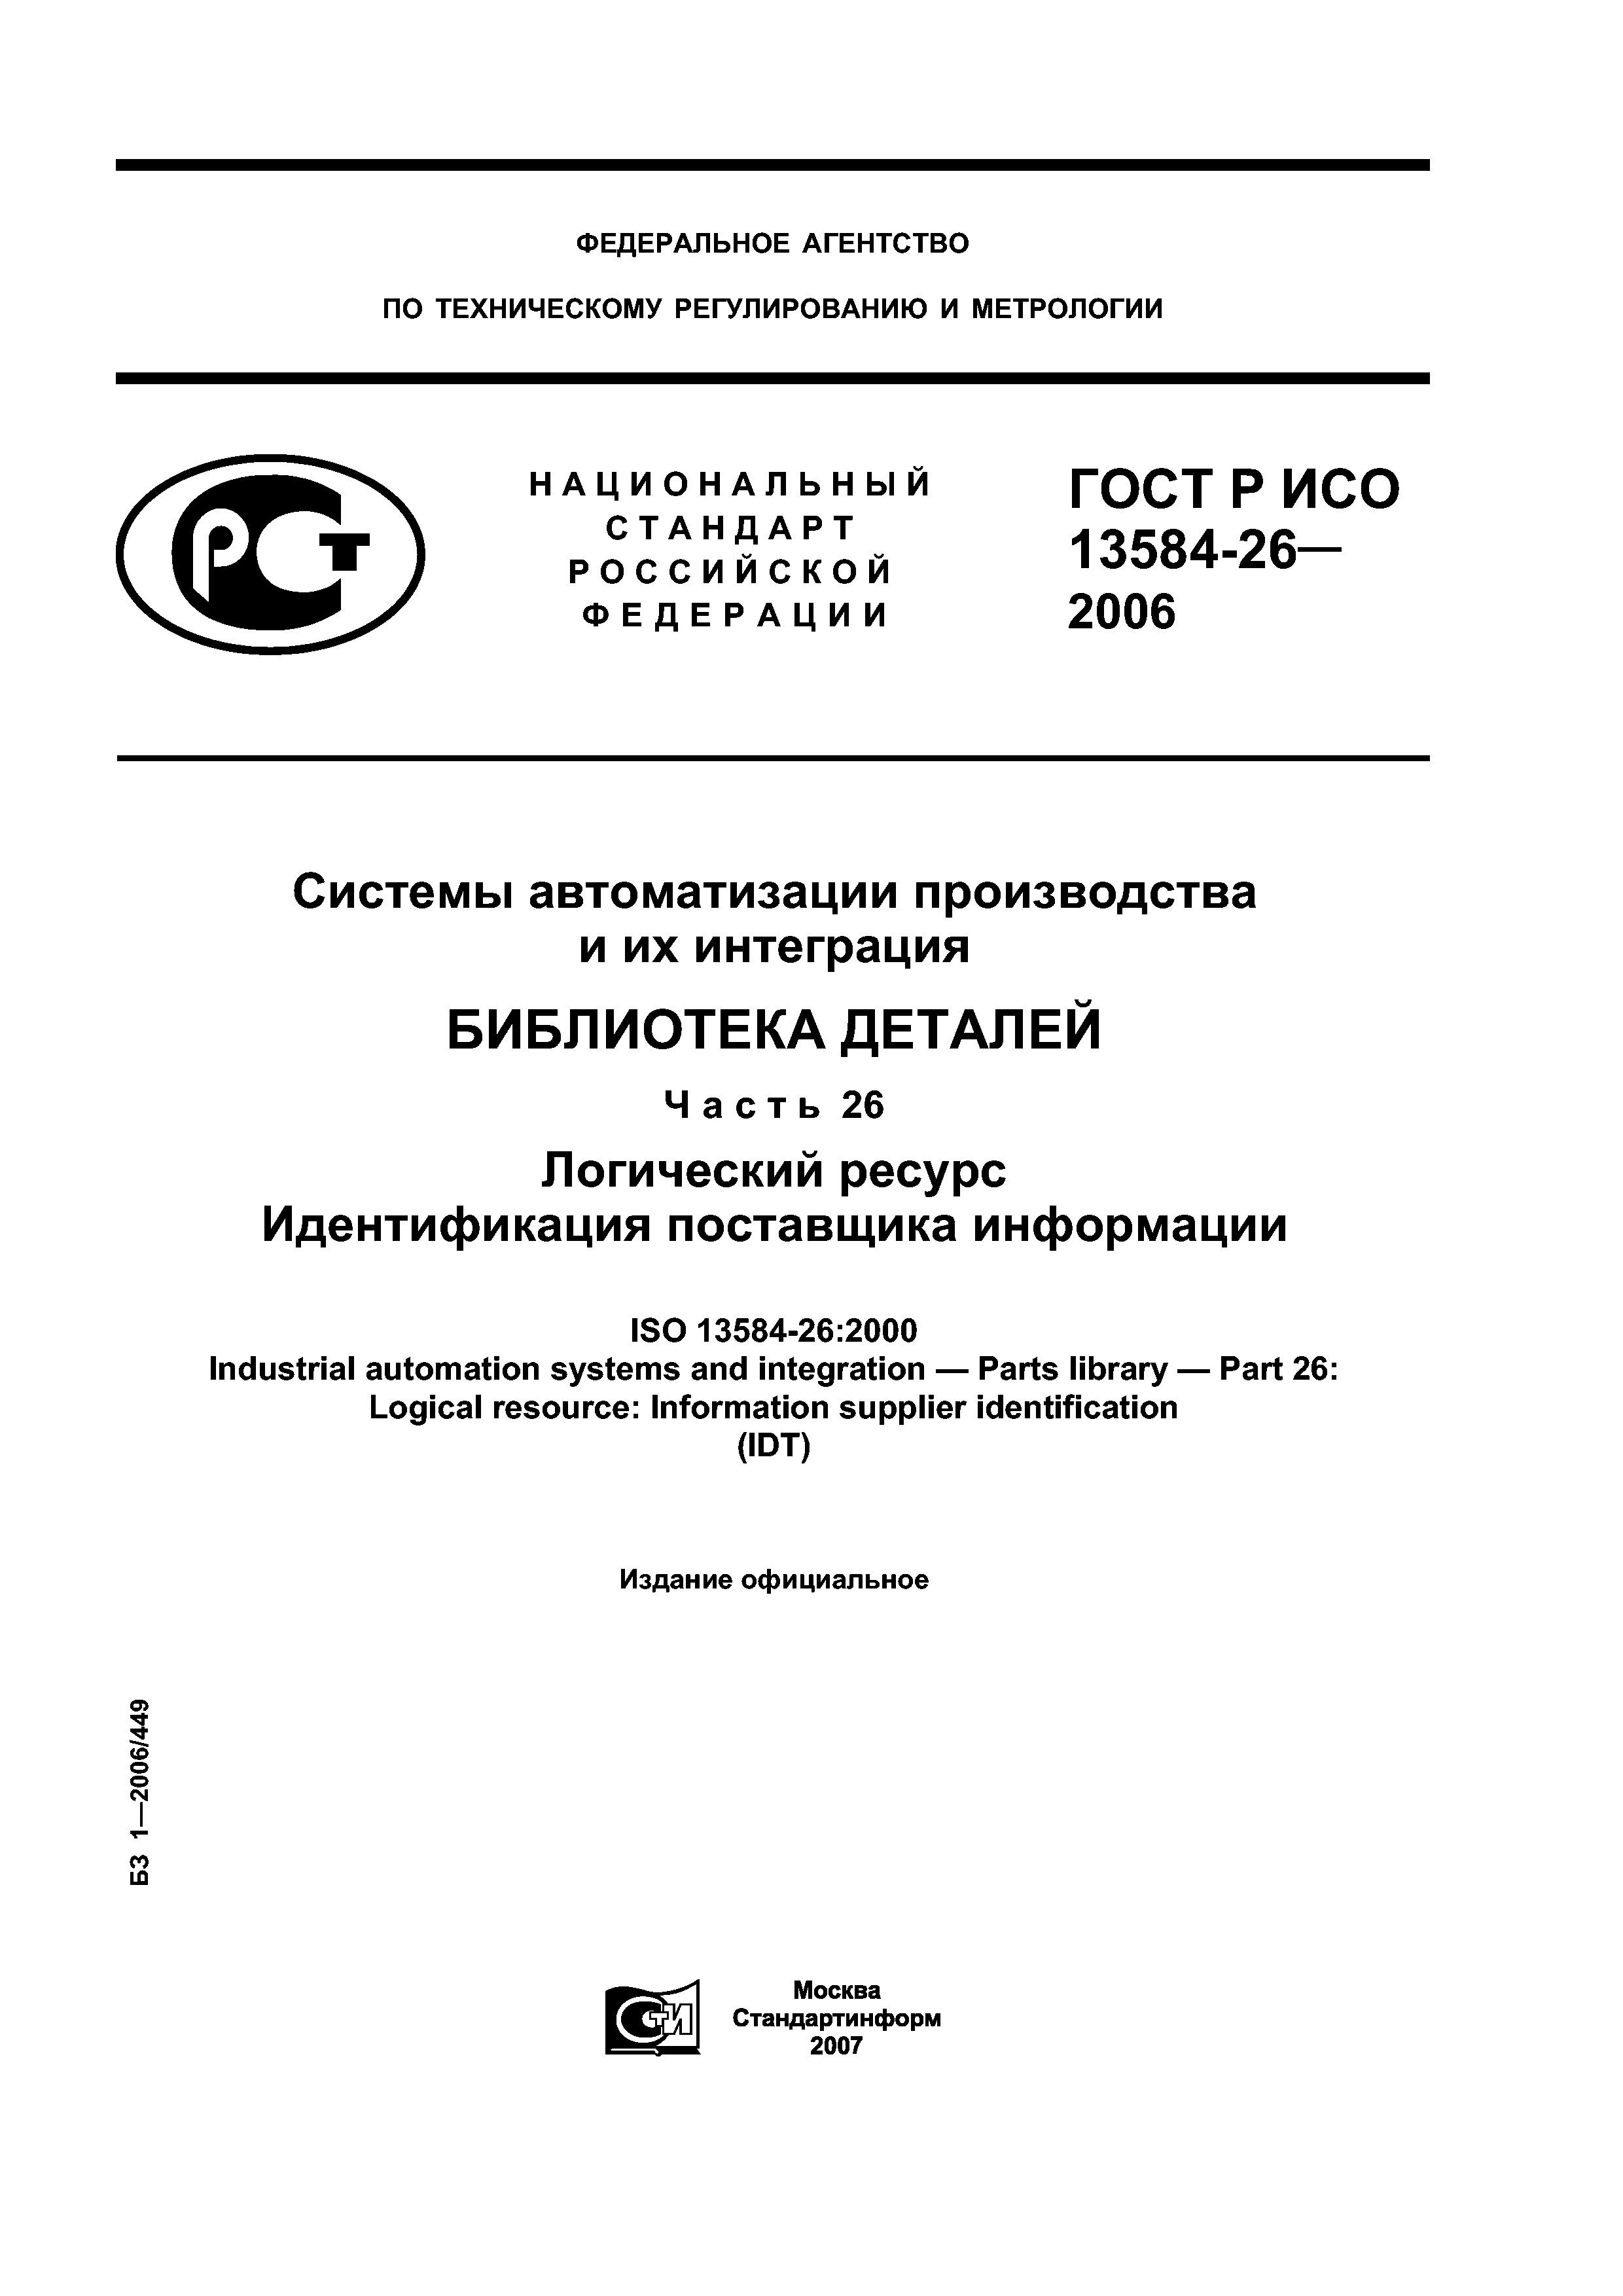 ГОСТ Р ИСО 13584-26-2006